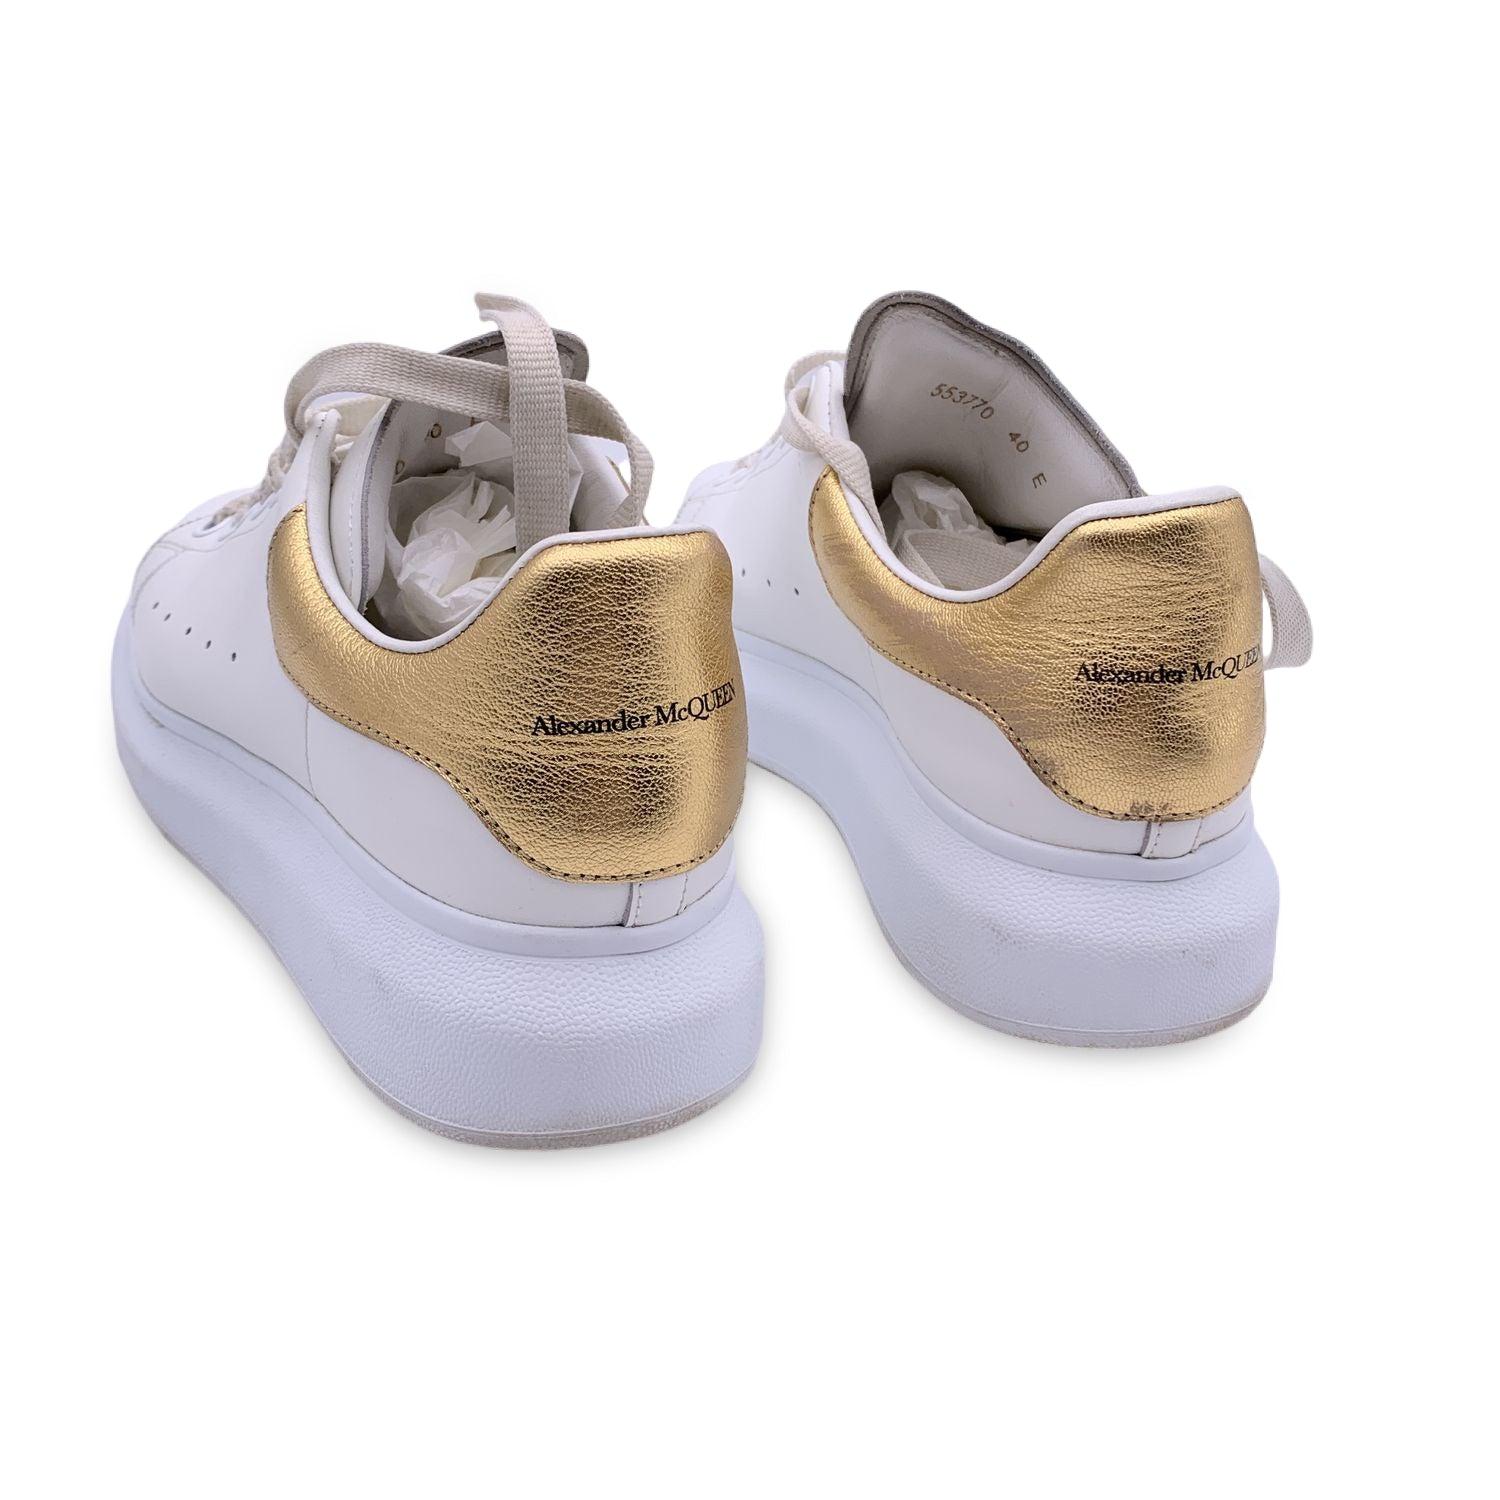 Alexander McQueen - Chaussures de sport à lacets, or blanc, taille 40 Excellent état à Rome, Rome